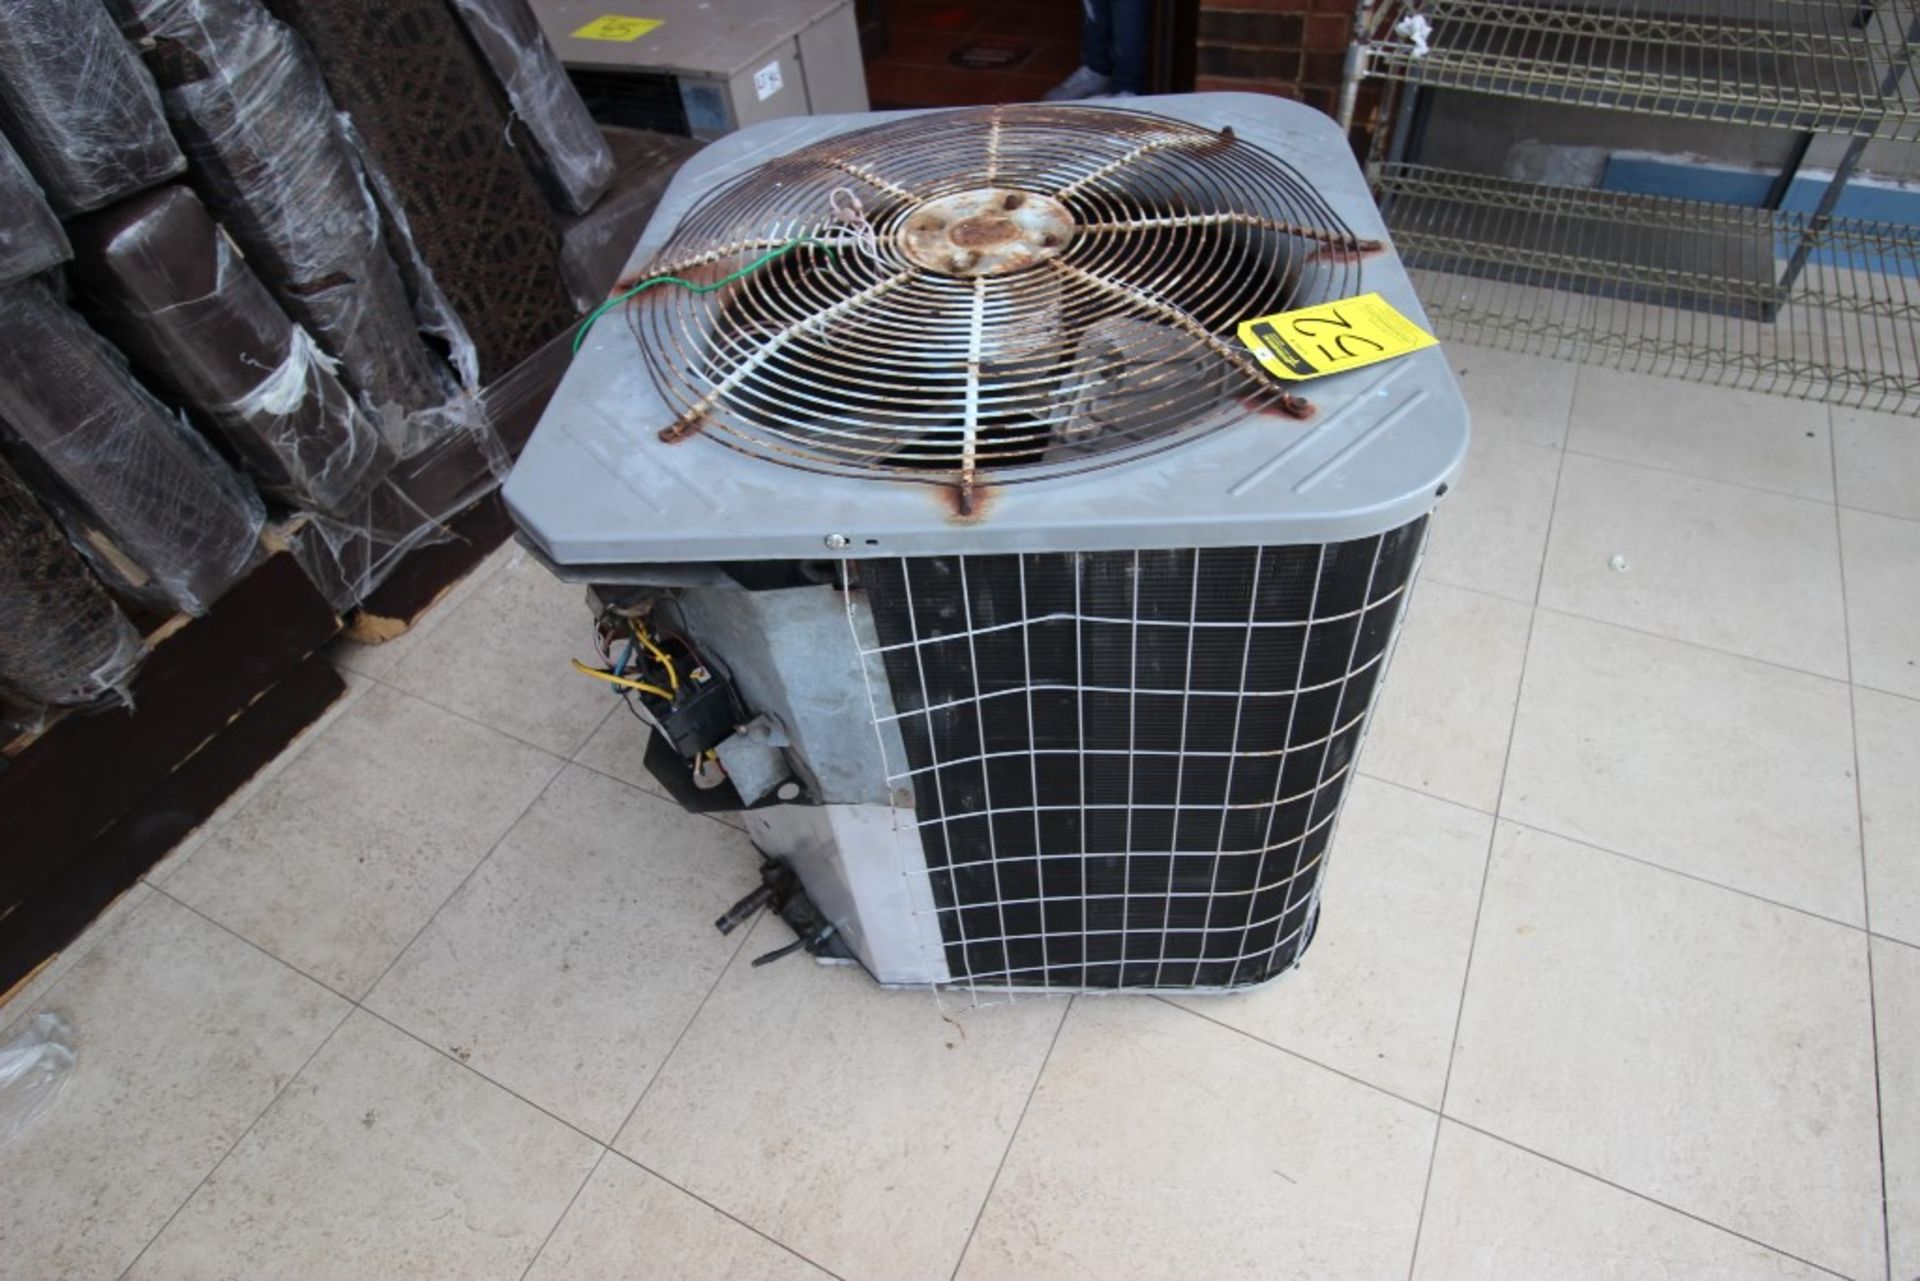 3 Unidades Condensadoras para aire acondicionado de un ventilador marca York, modelo:YCJD36S41S1A, - Image 8 of 19